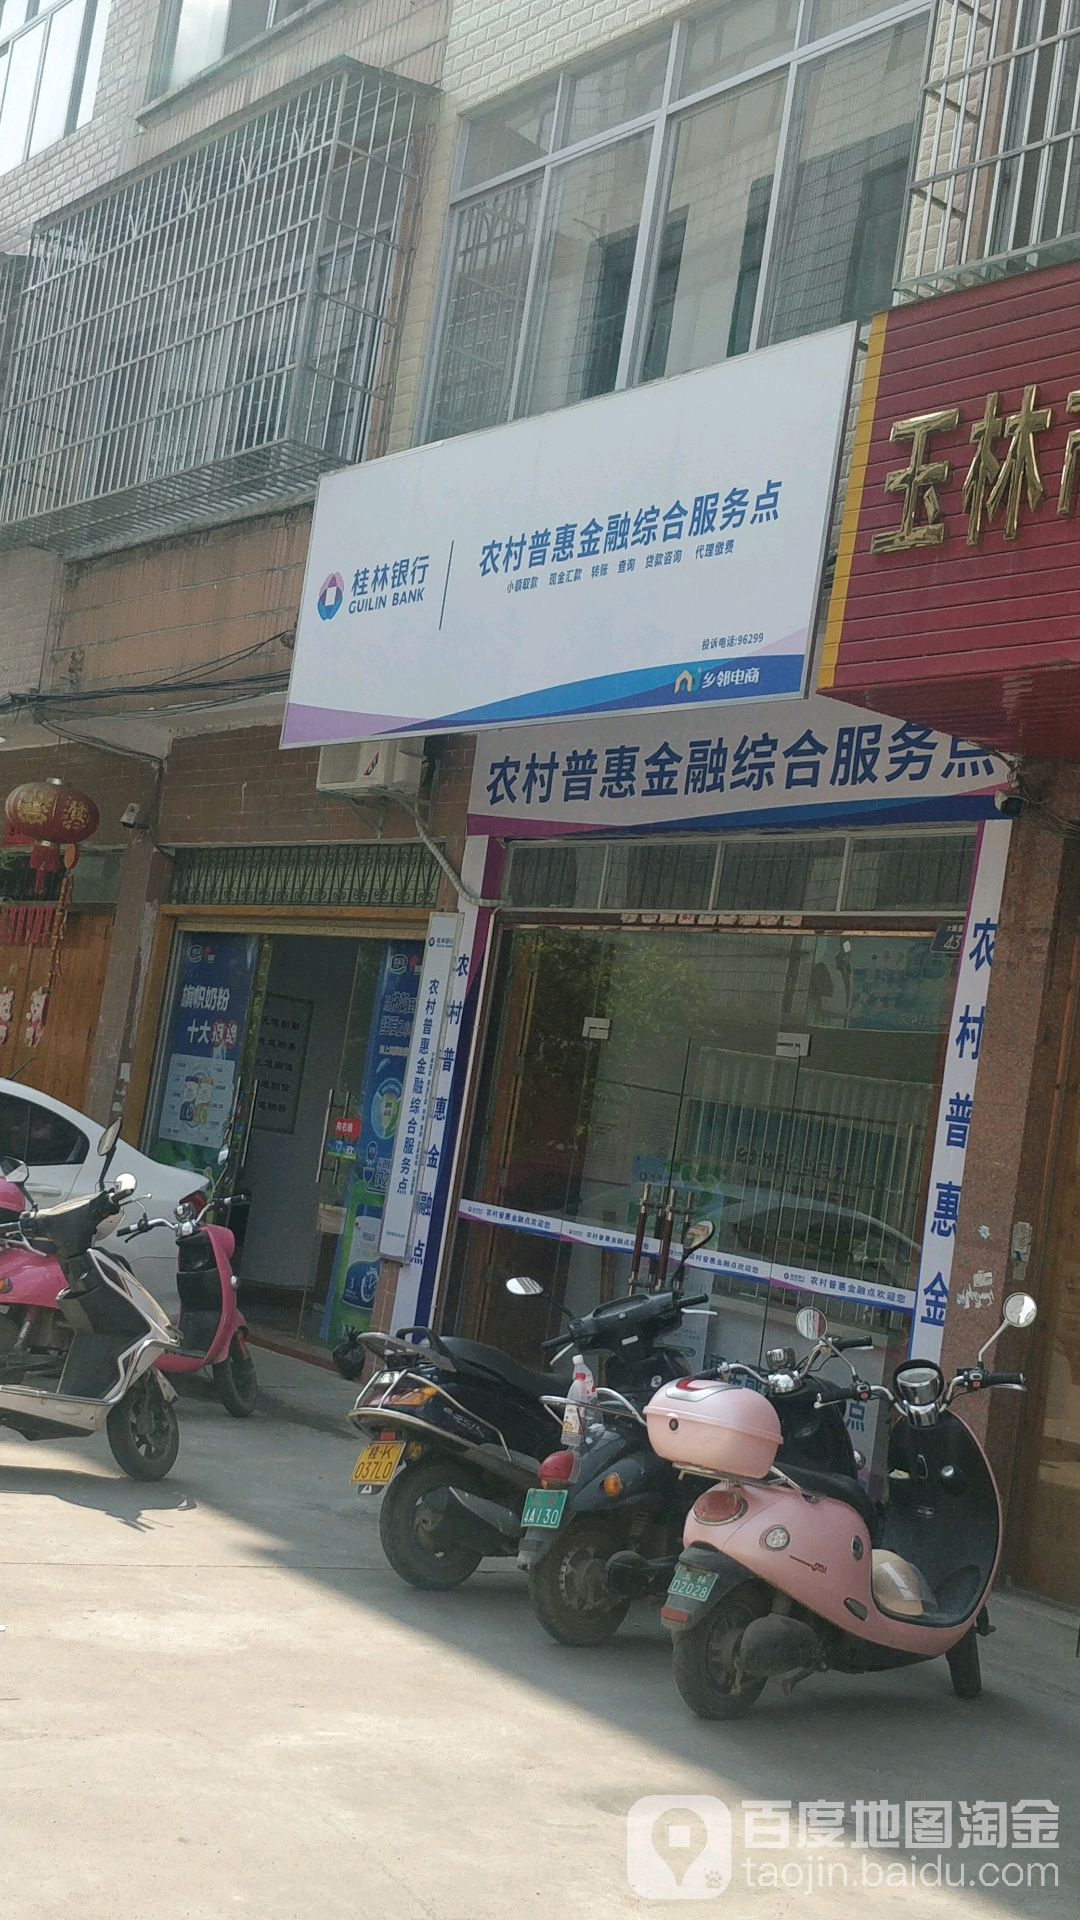 桂林银行(玉城街道大新社区农村普惠金融综合服务点)